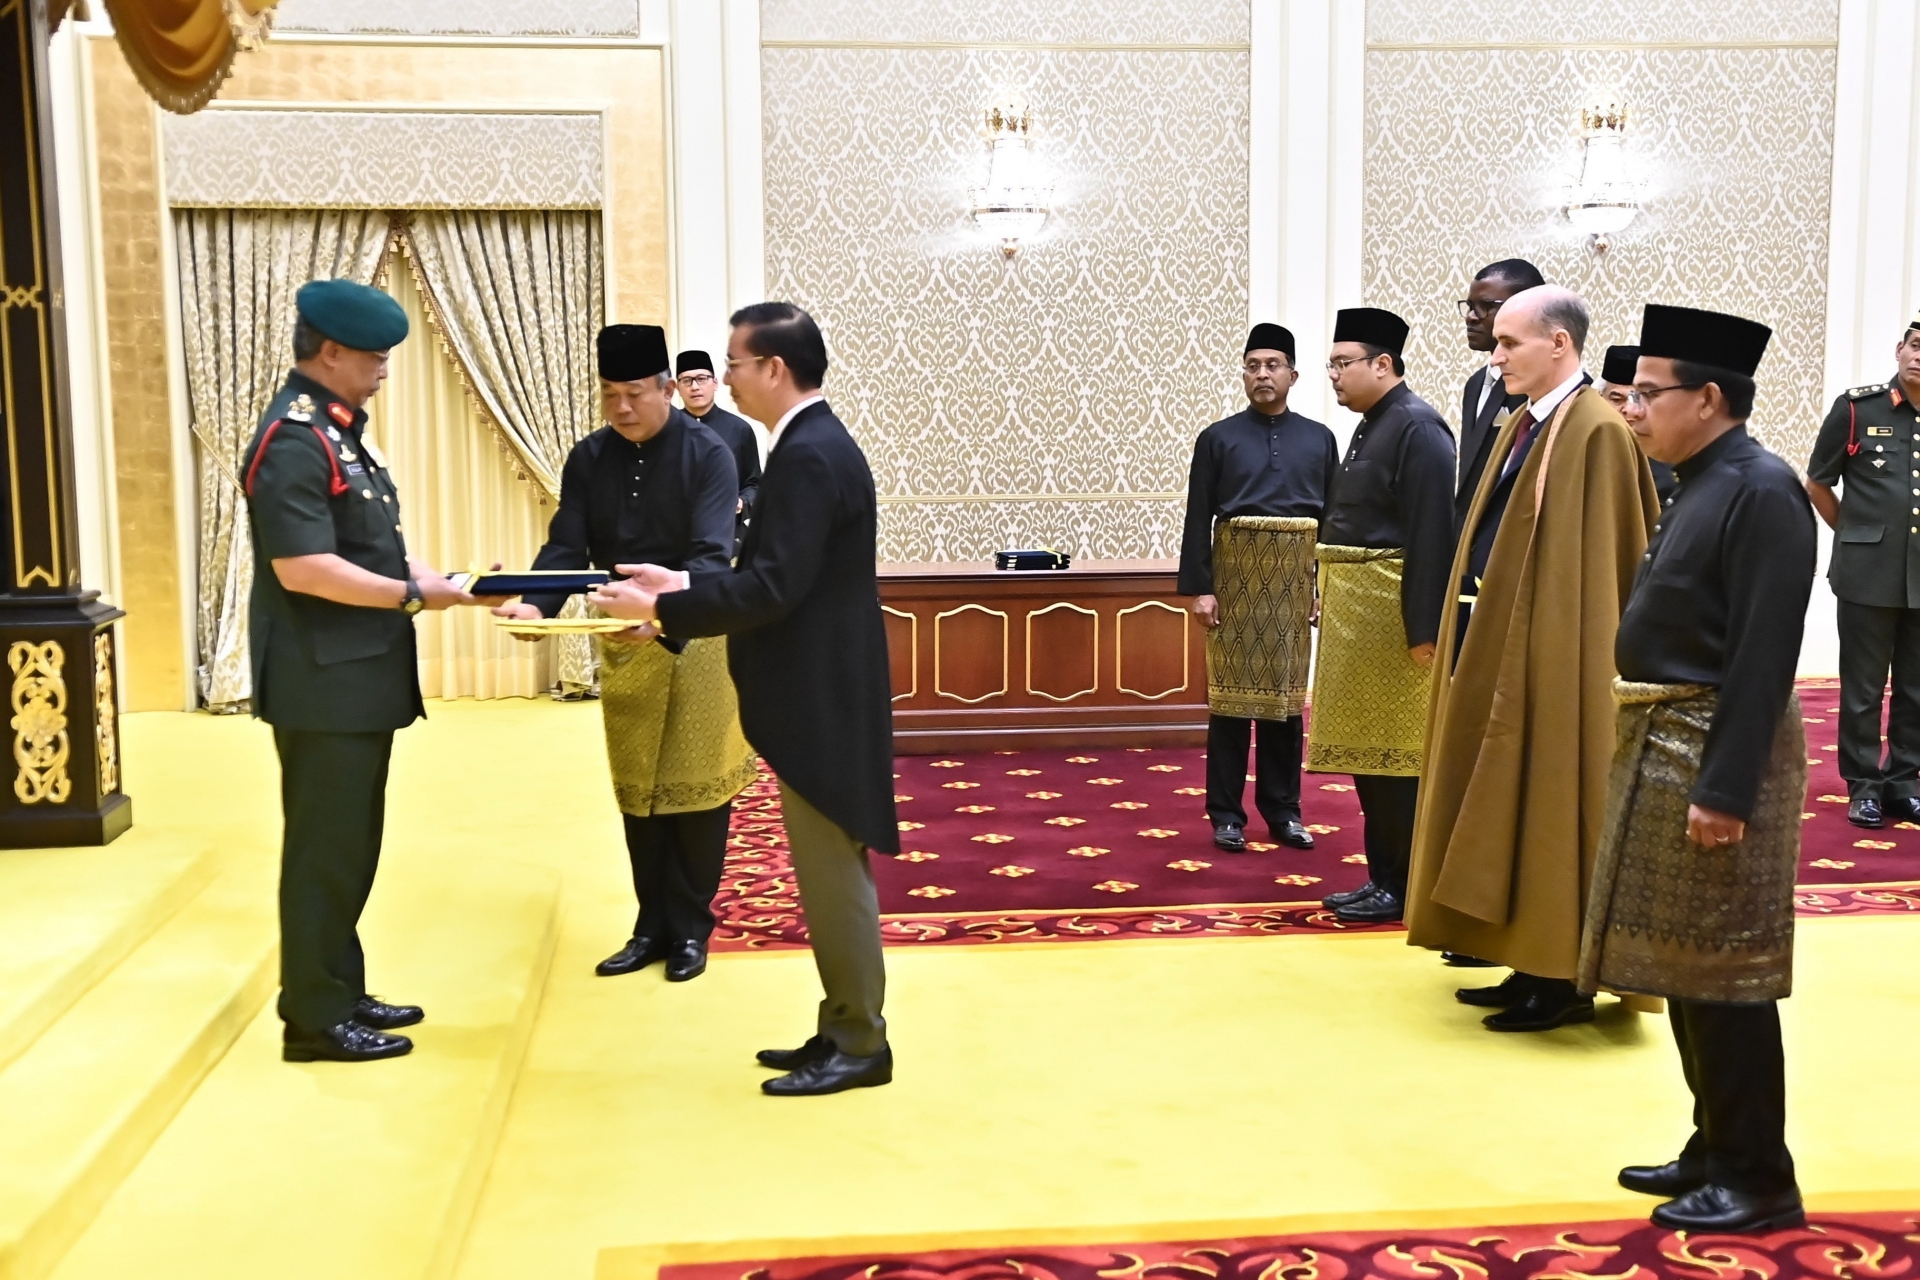 越南驻马来西亚大使丁玉灵向马来西亚国王递交国书。